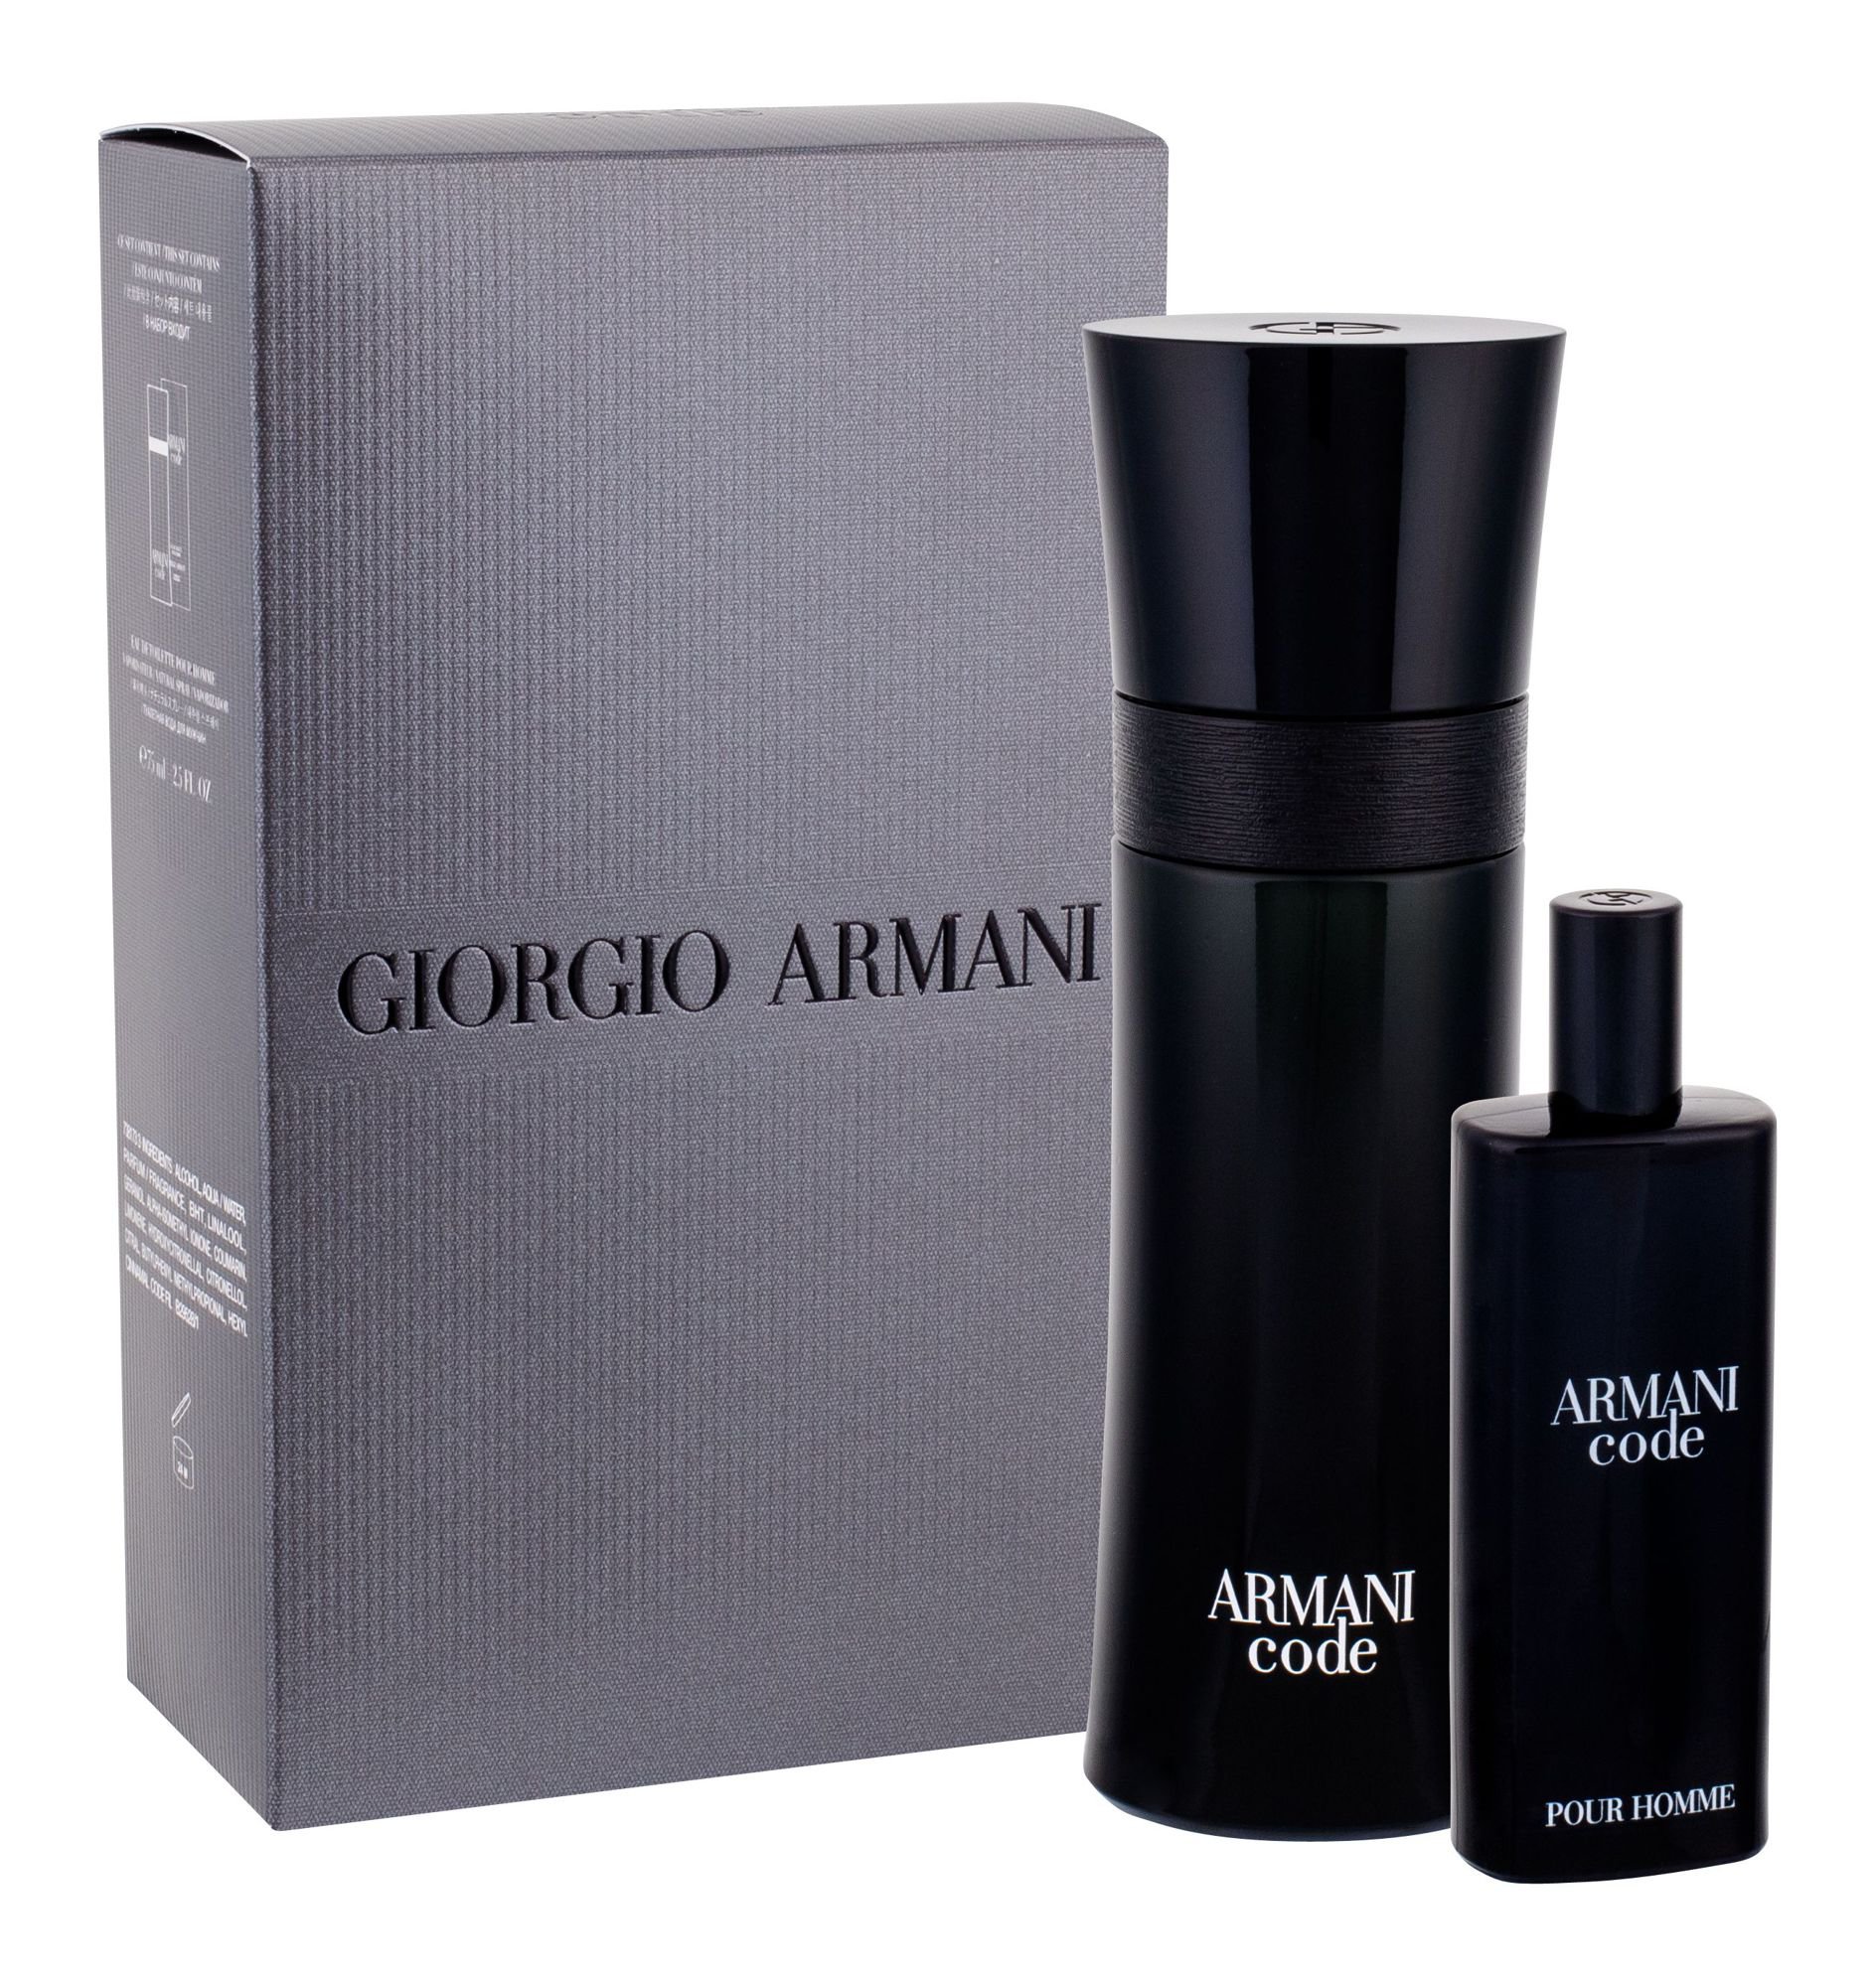 Giorgio Armani Armani Code Pour Homme, toaletná voda 75 ml + toaletná voda 15 ml